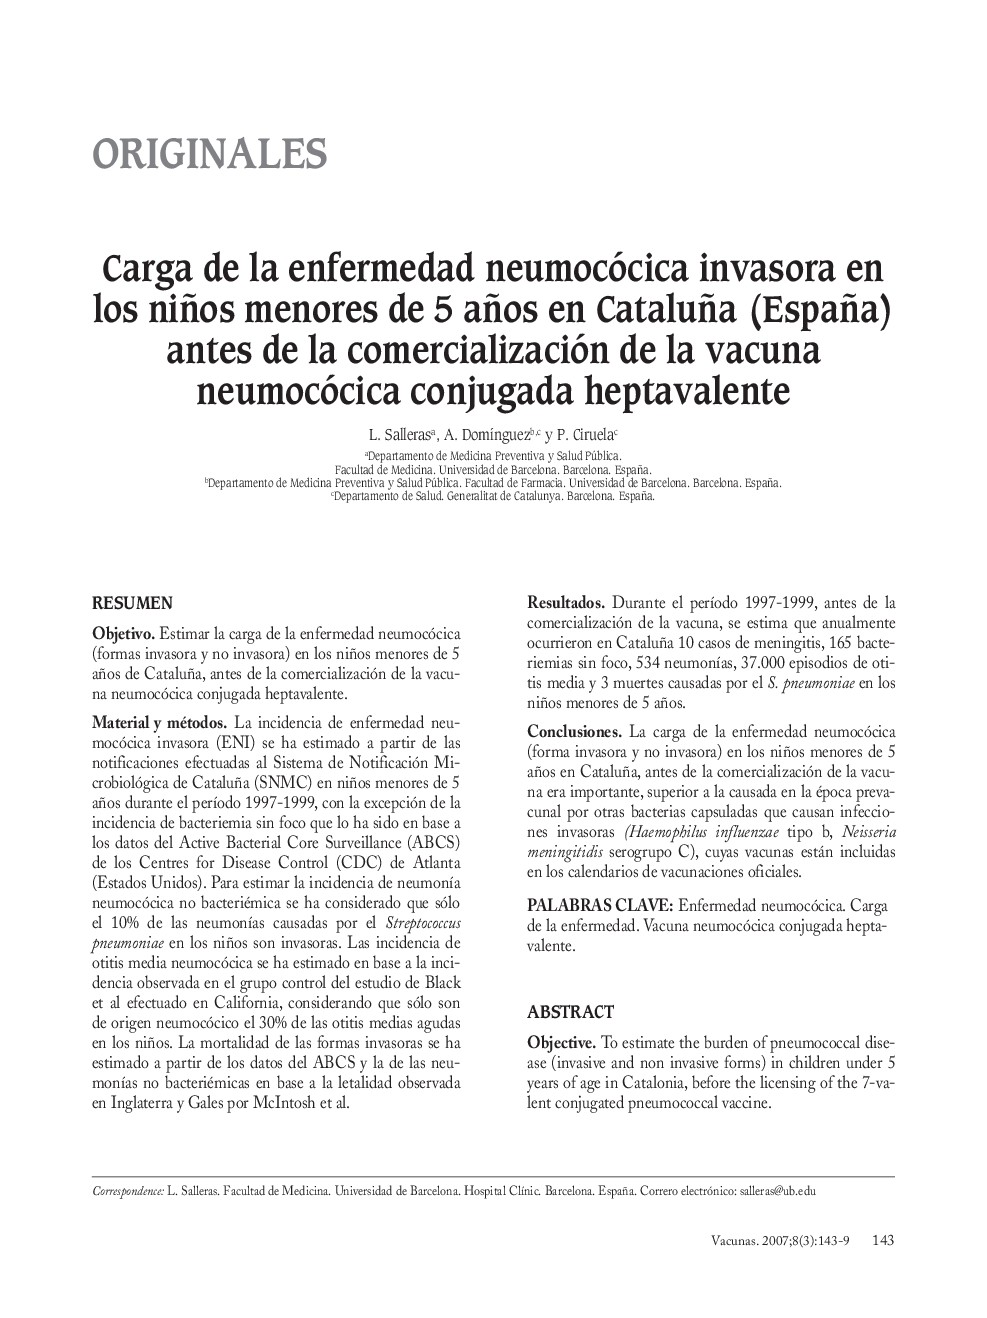 Carga de la enfermedad neumocócica invasora en los niños menores de 5 años en Cataluña (España) antes de la comercialización de la vacuna neumocócica conjugada heptavalente